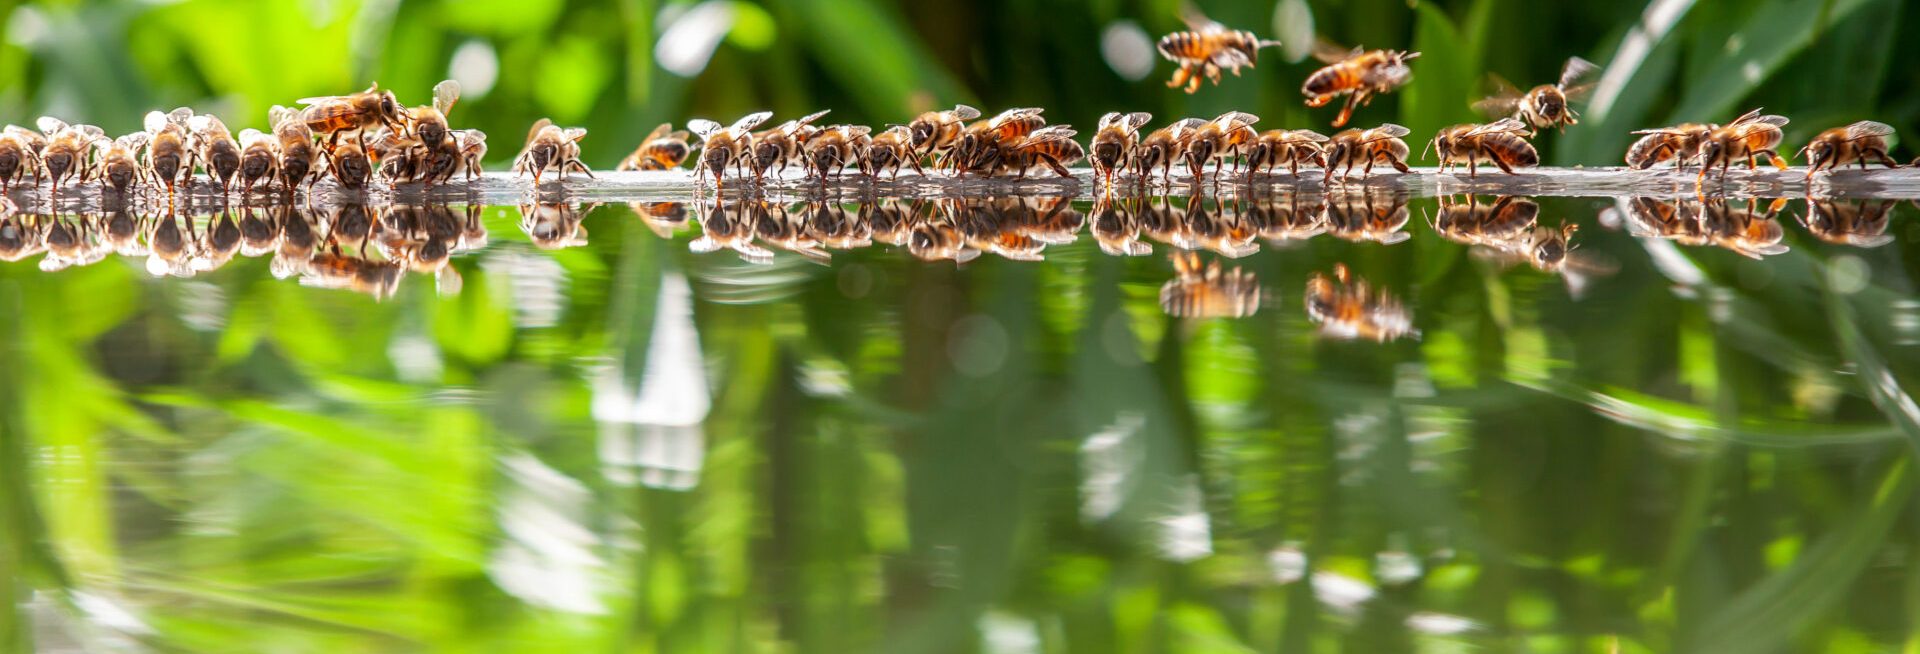 biodiversiteit bijen bij water